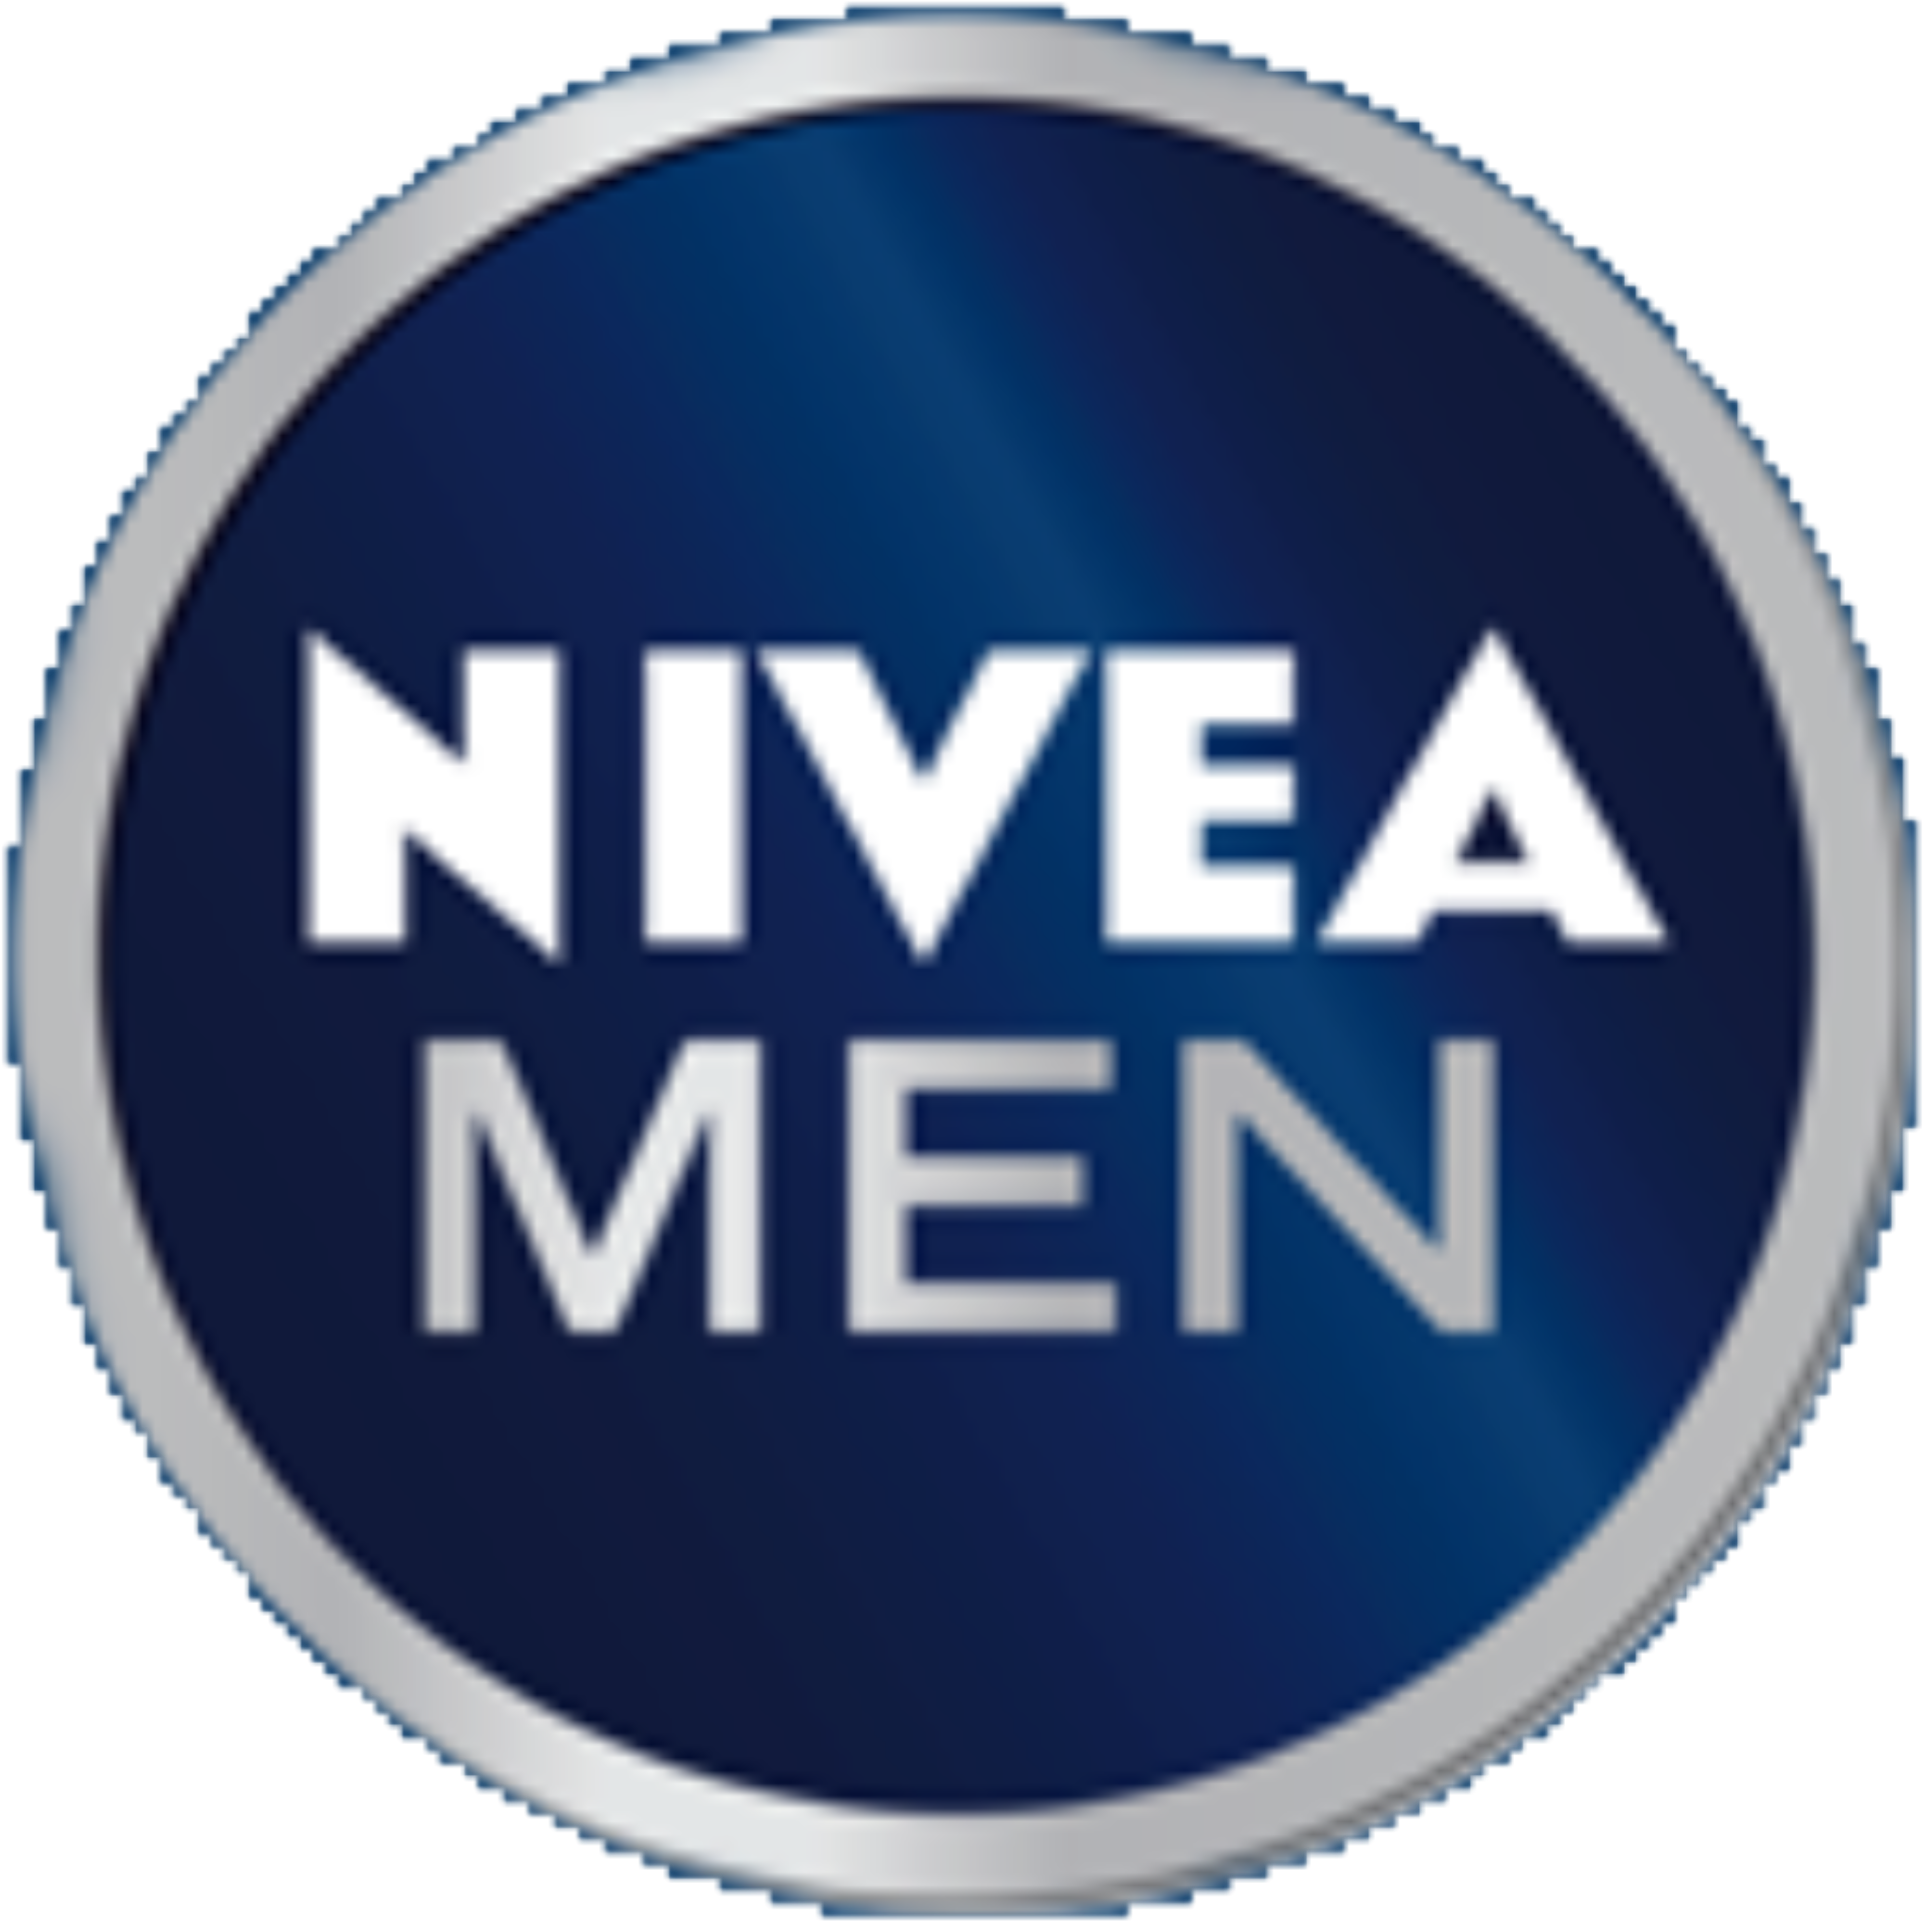 Nivea Men Logo 2013 - Nivea Men Logo (1952x1926), Png Download